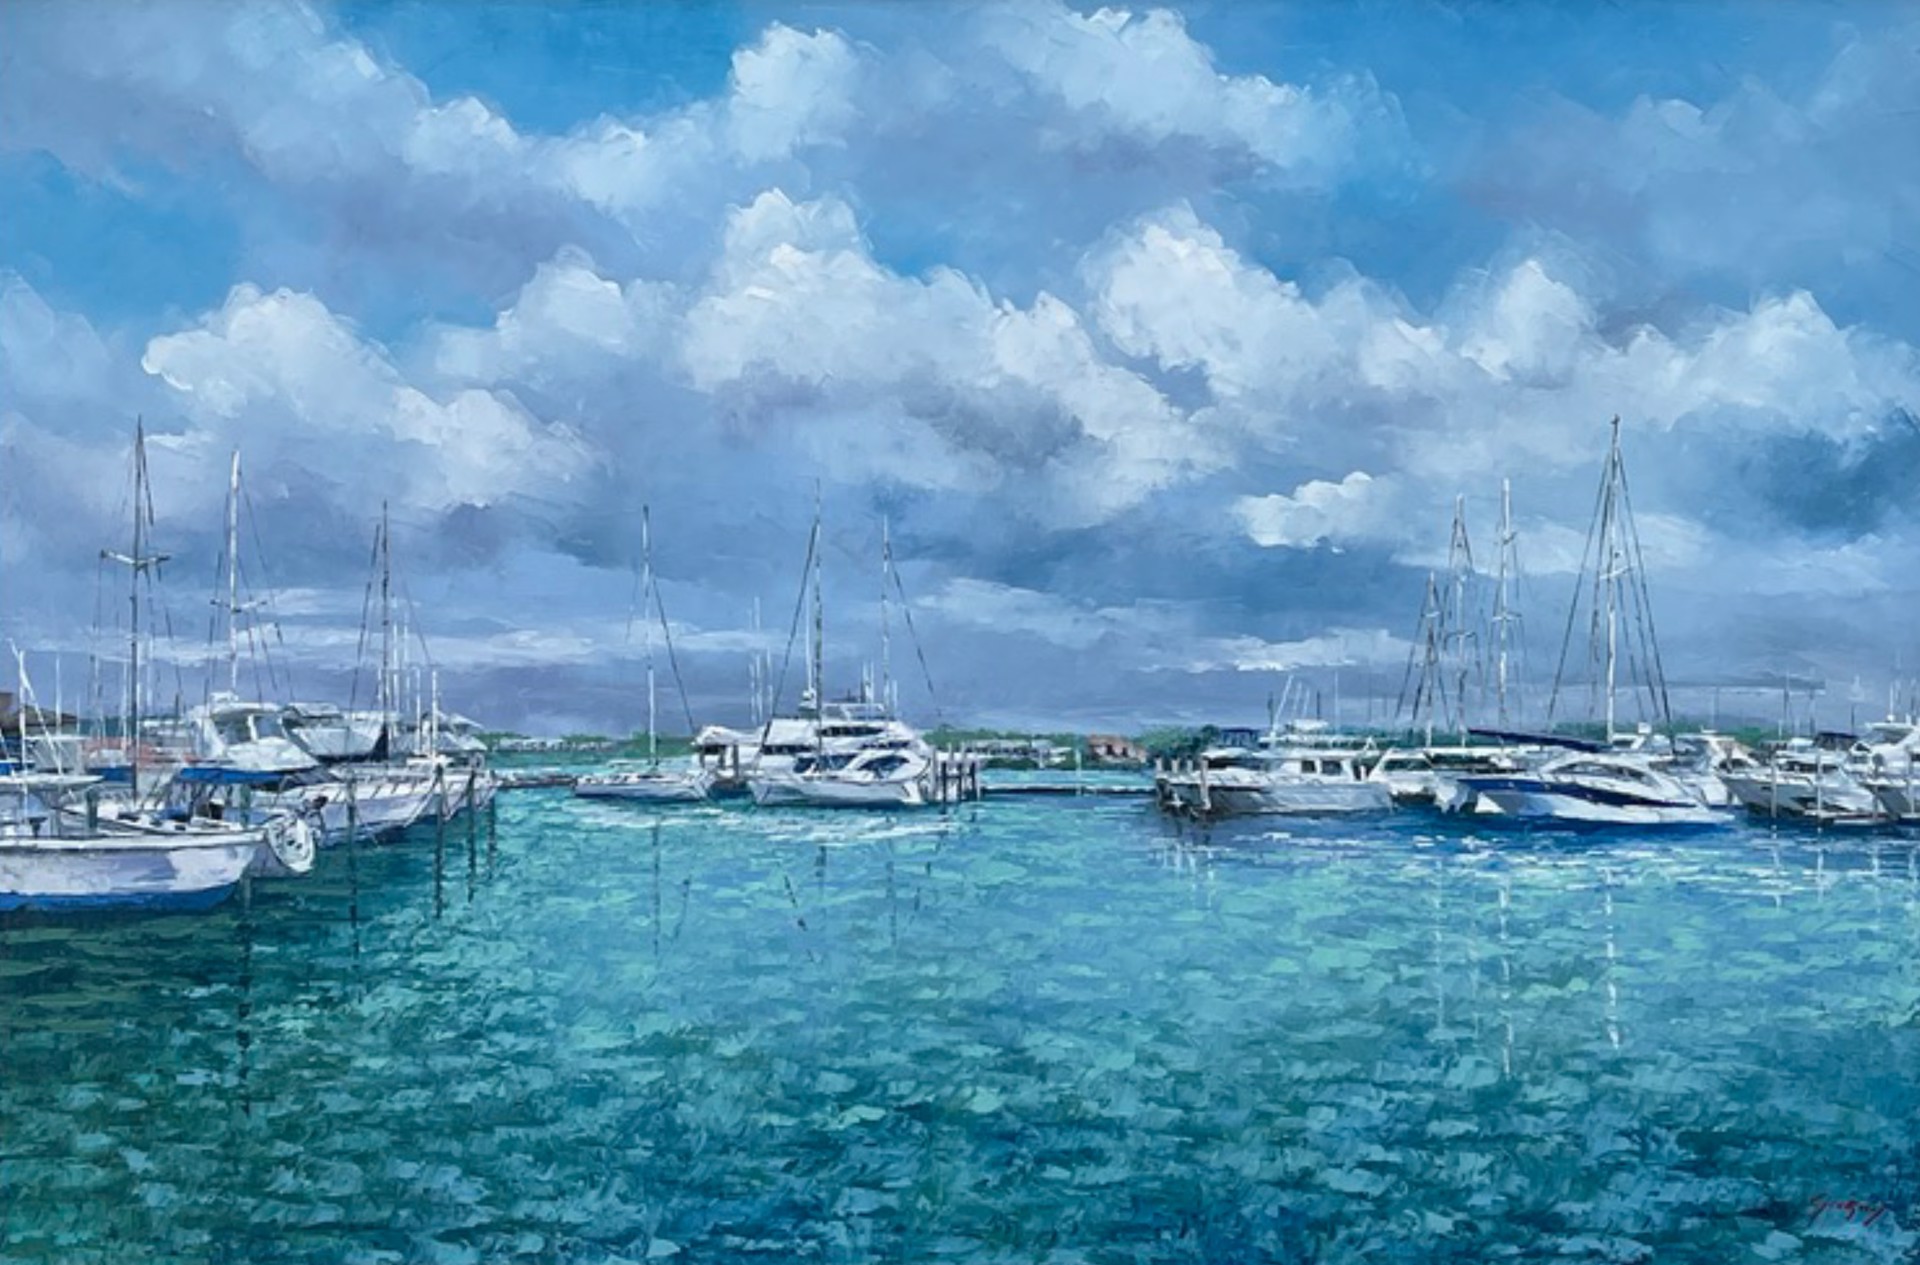 "Naples Marina" by Mauricio Garay